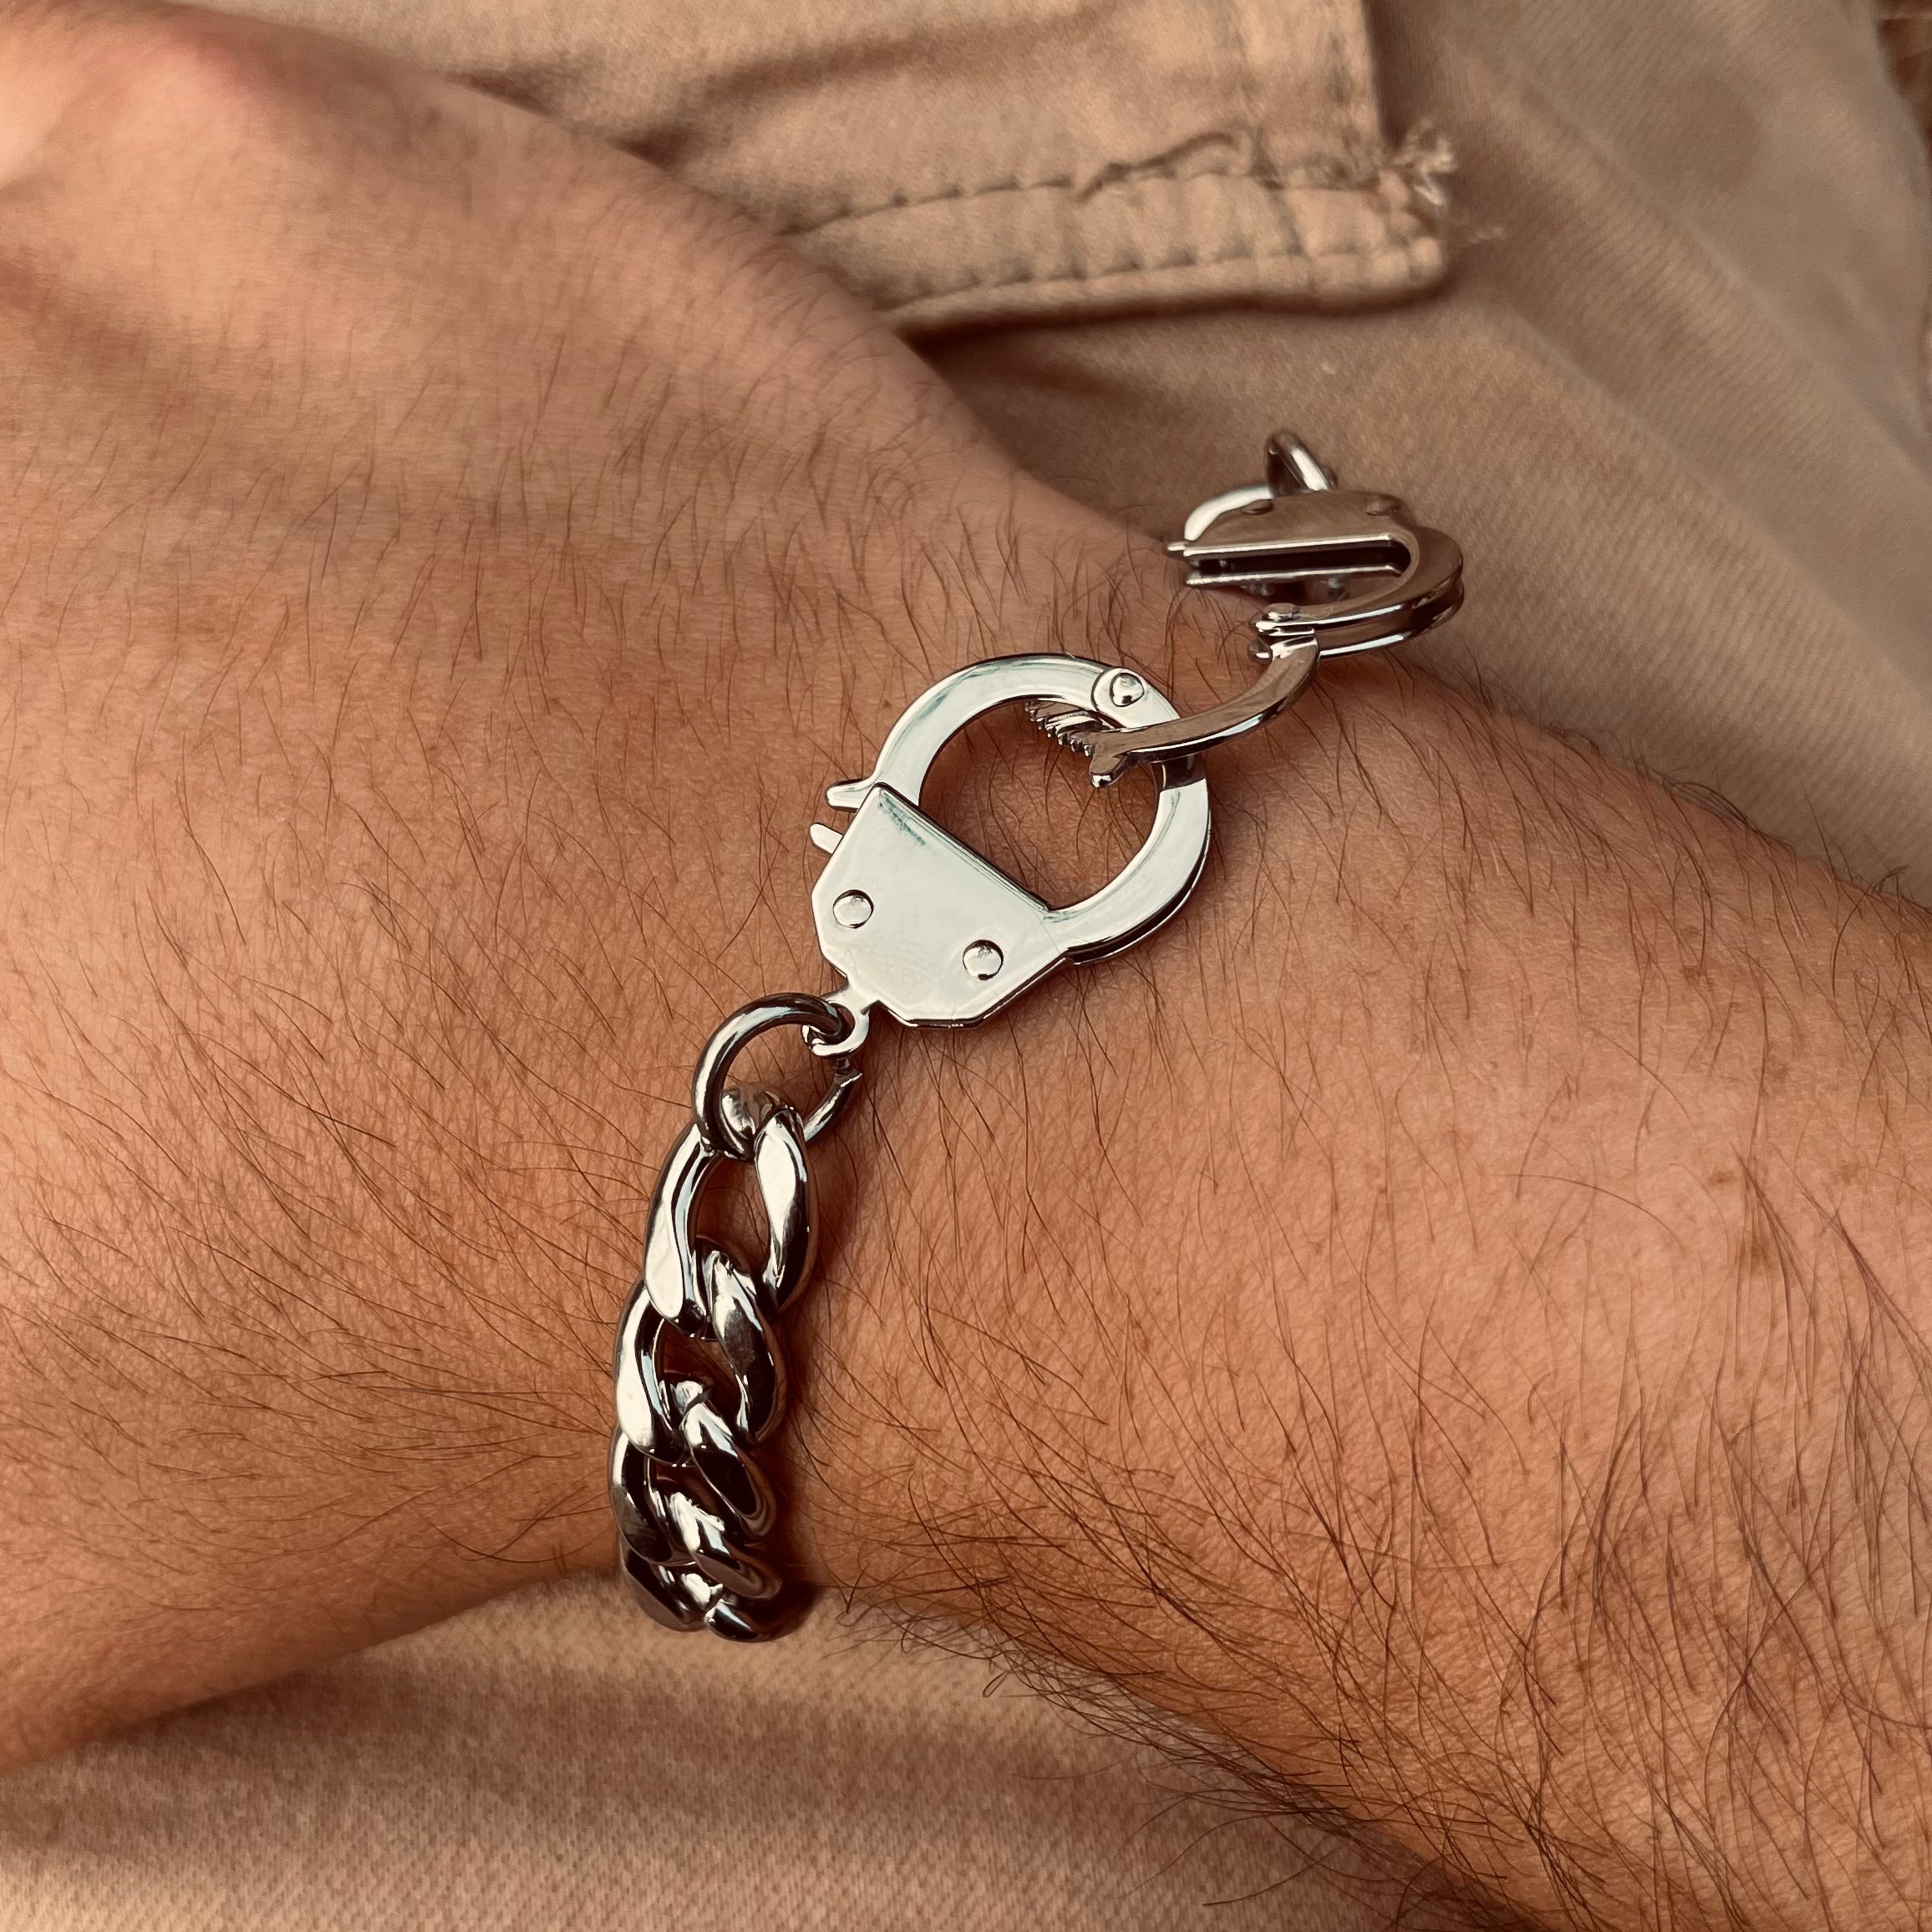 Alexander Silver Handcuff - LeoNegro